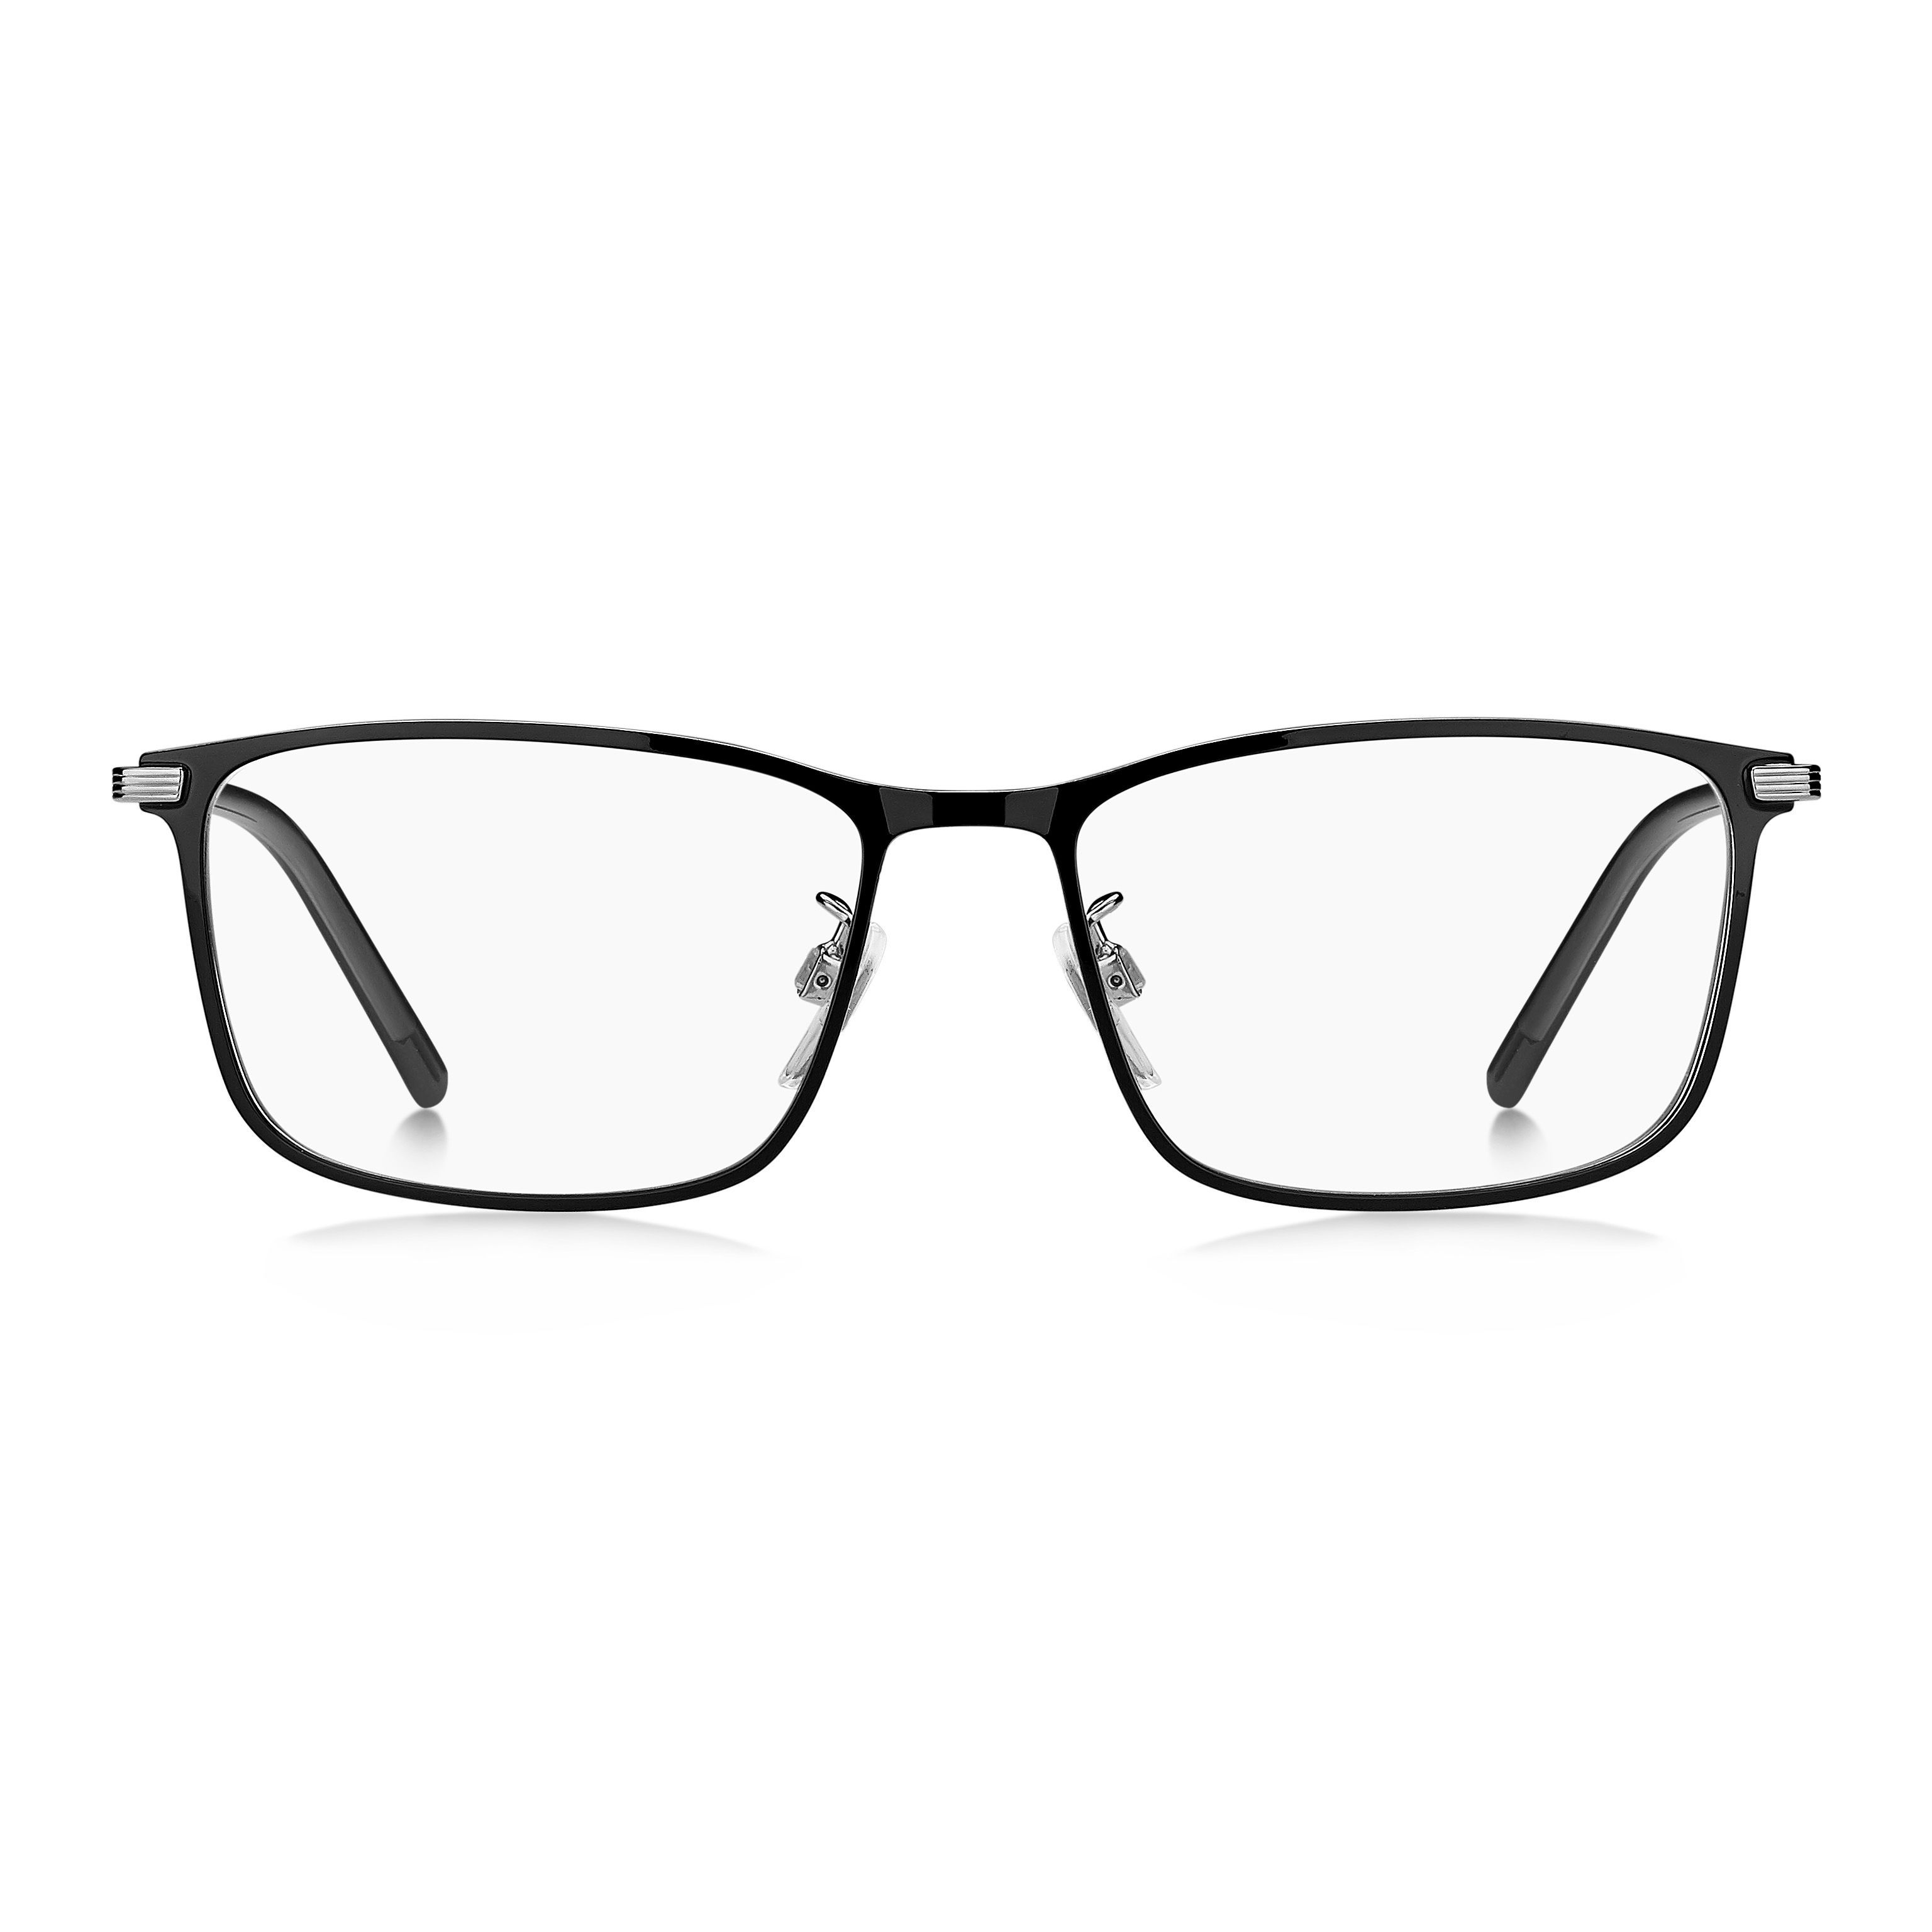 TH 2013 F Square Eyeglasses CSA - size 54